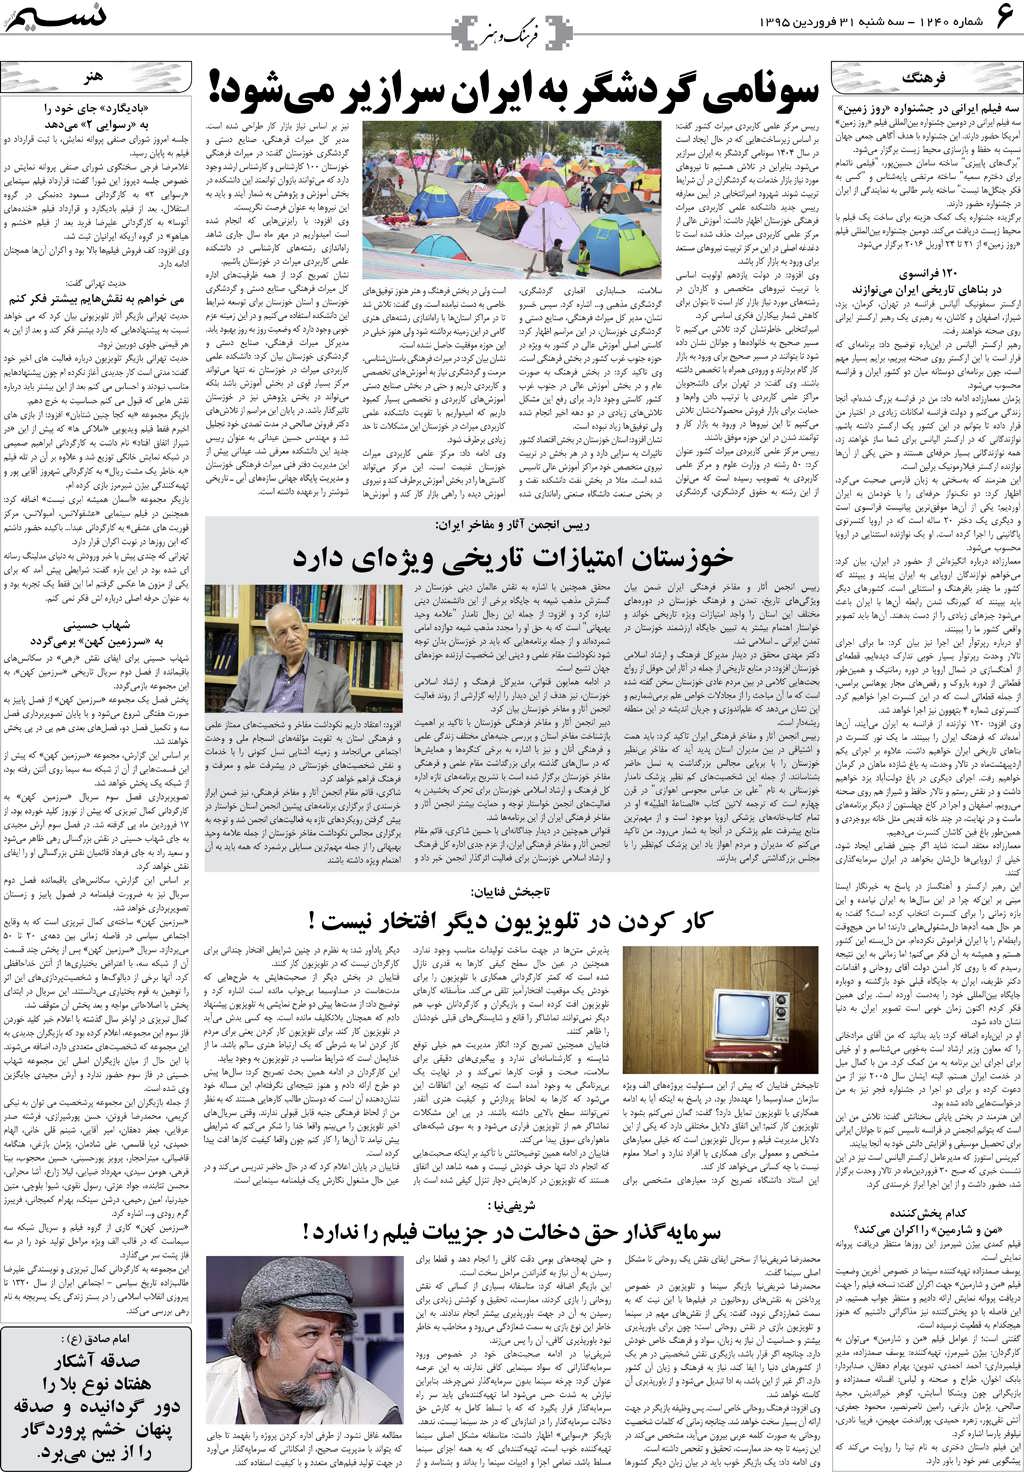 صفحه فرهنگ و هنر روزنامه نسیم شماره 1240